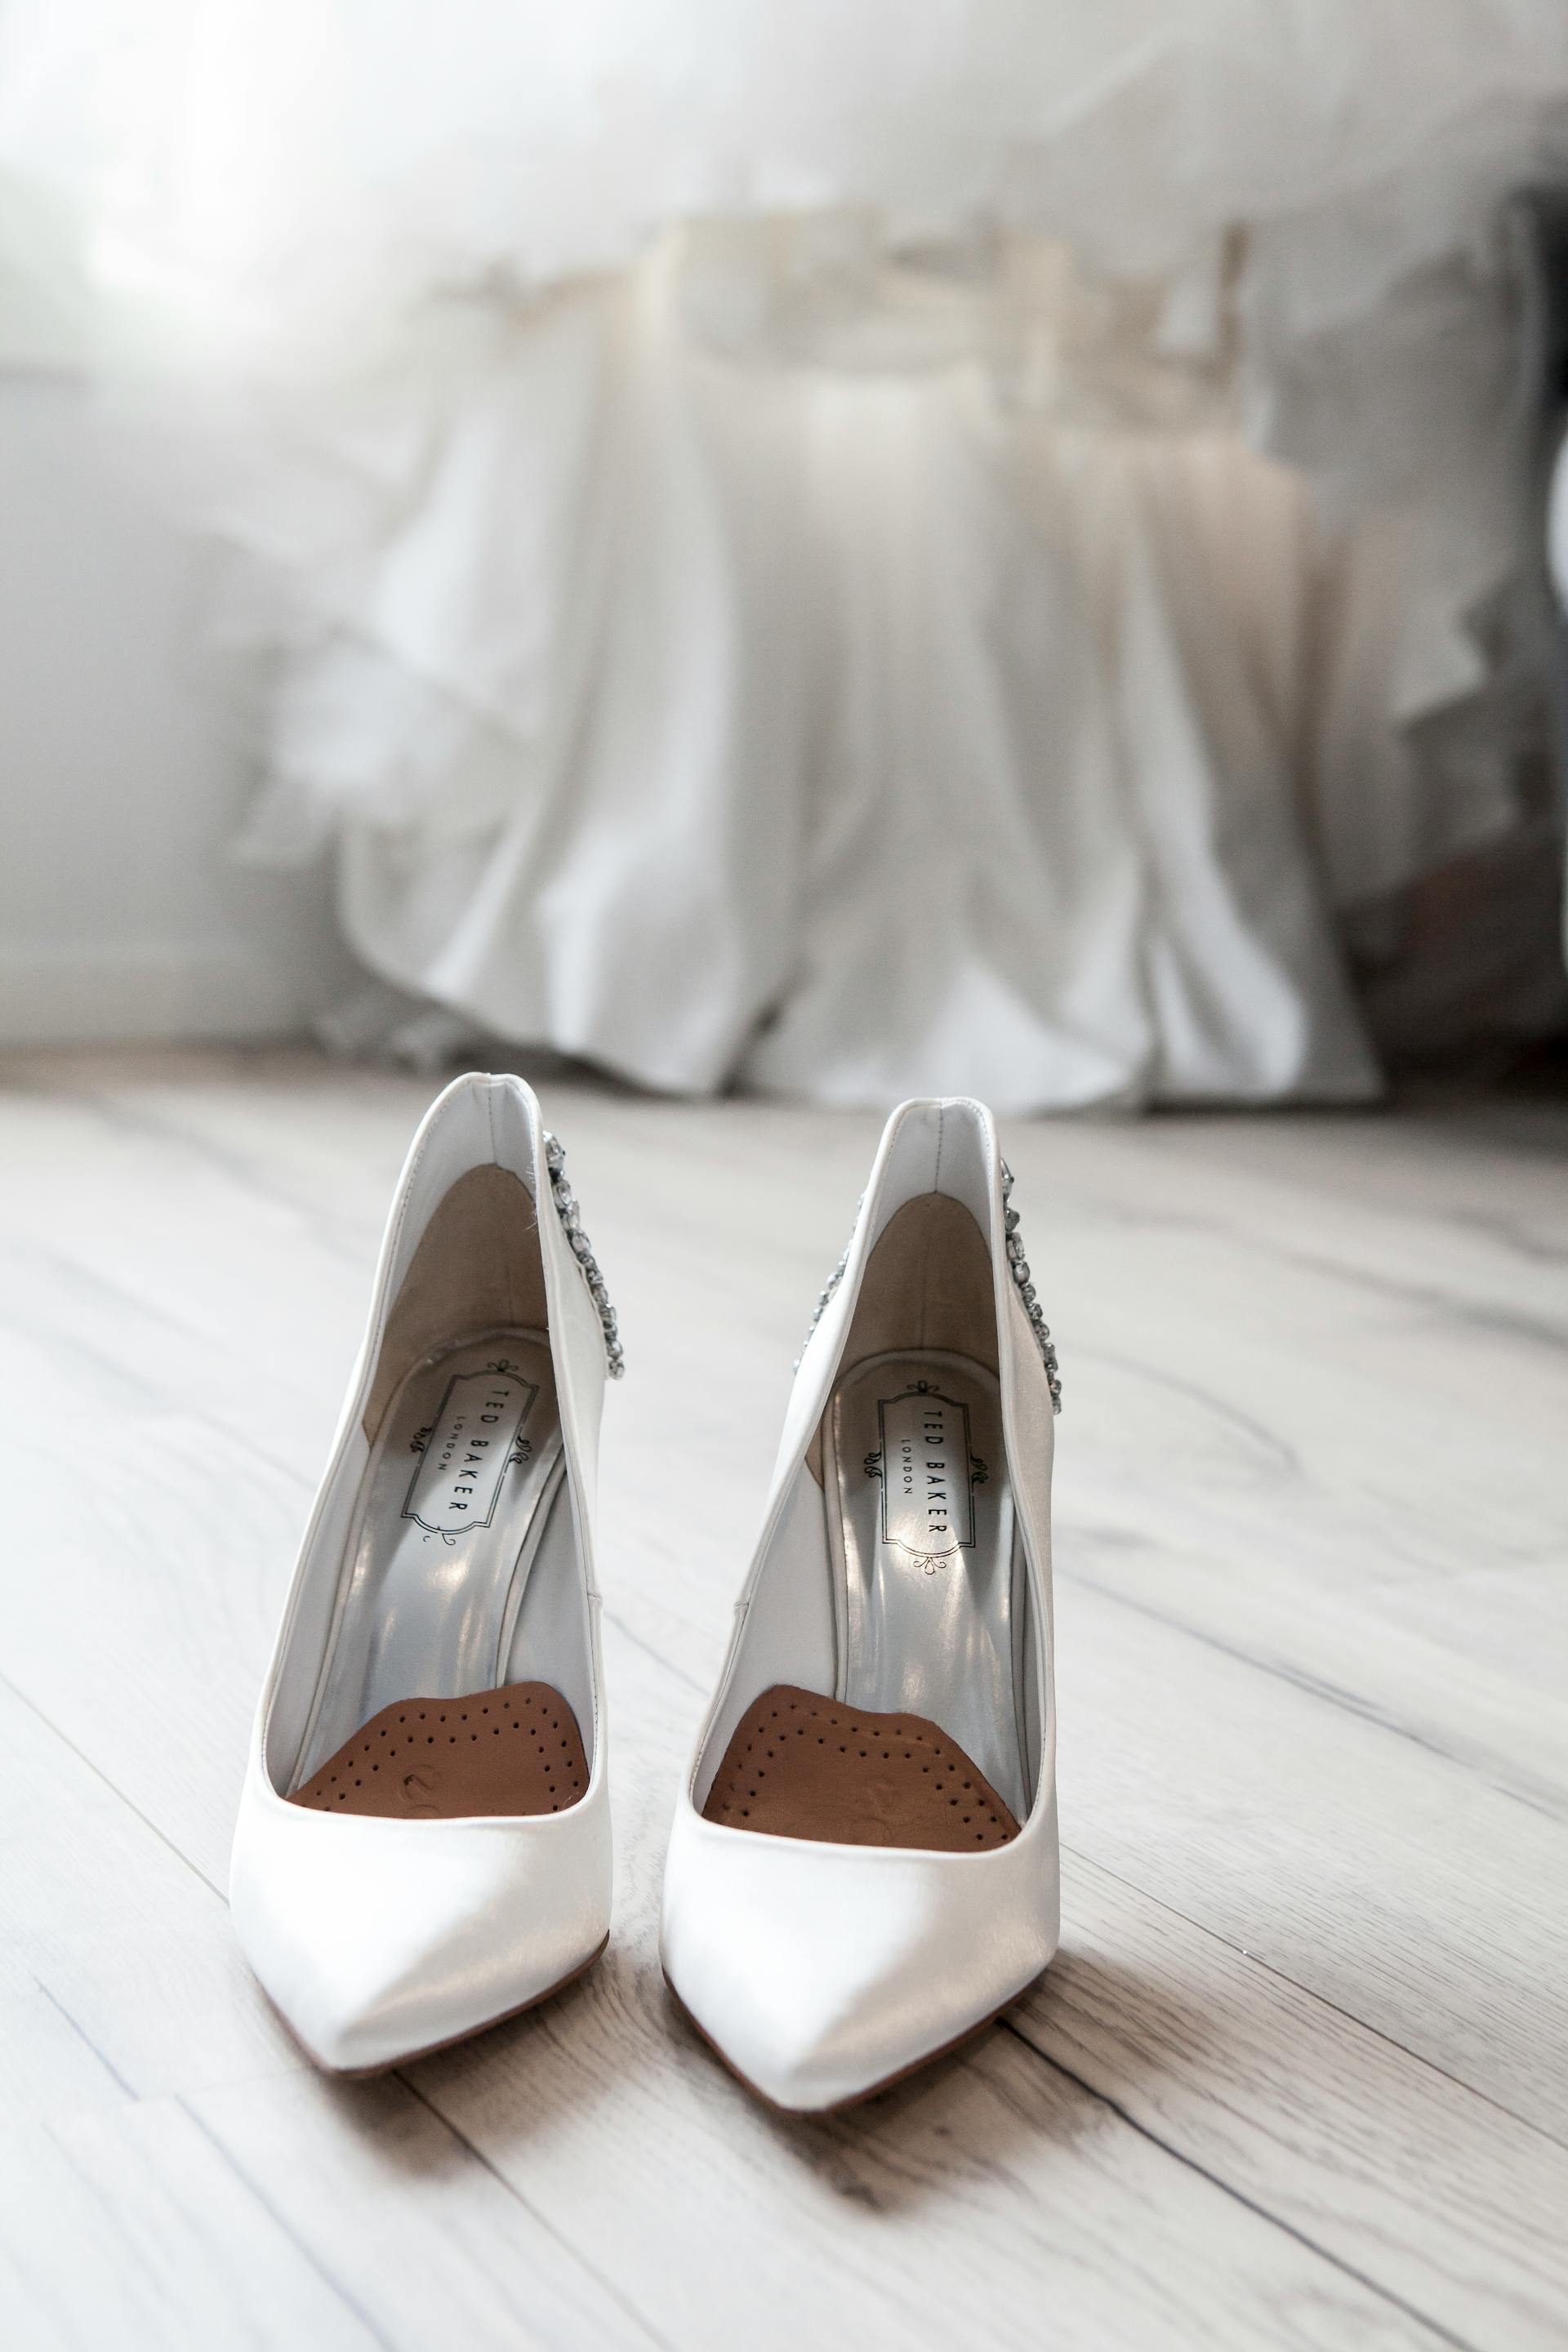 Chaussures de mariée | Source : Pexels